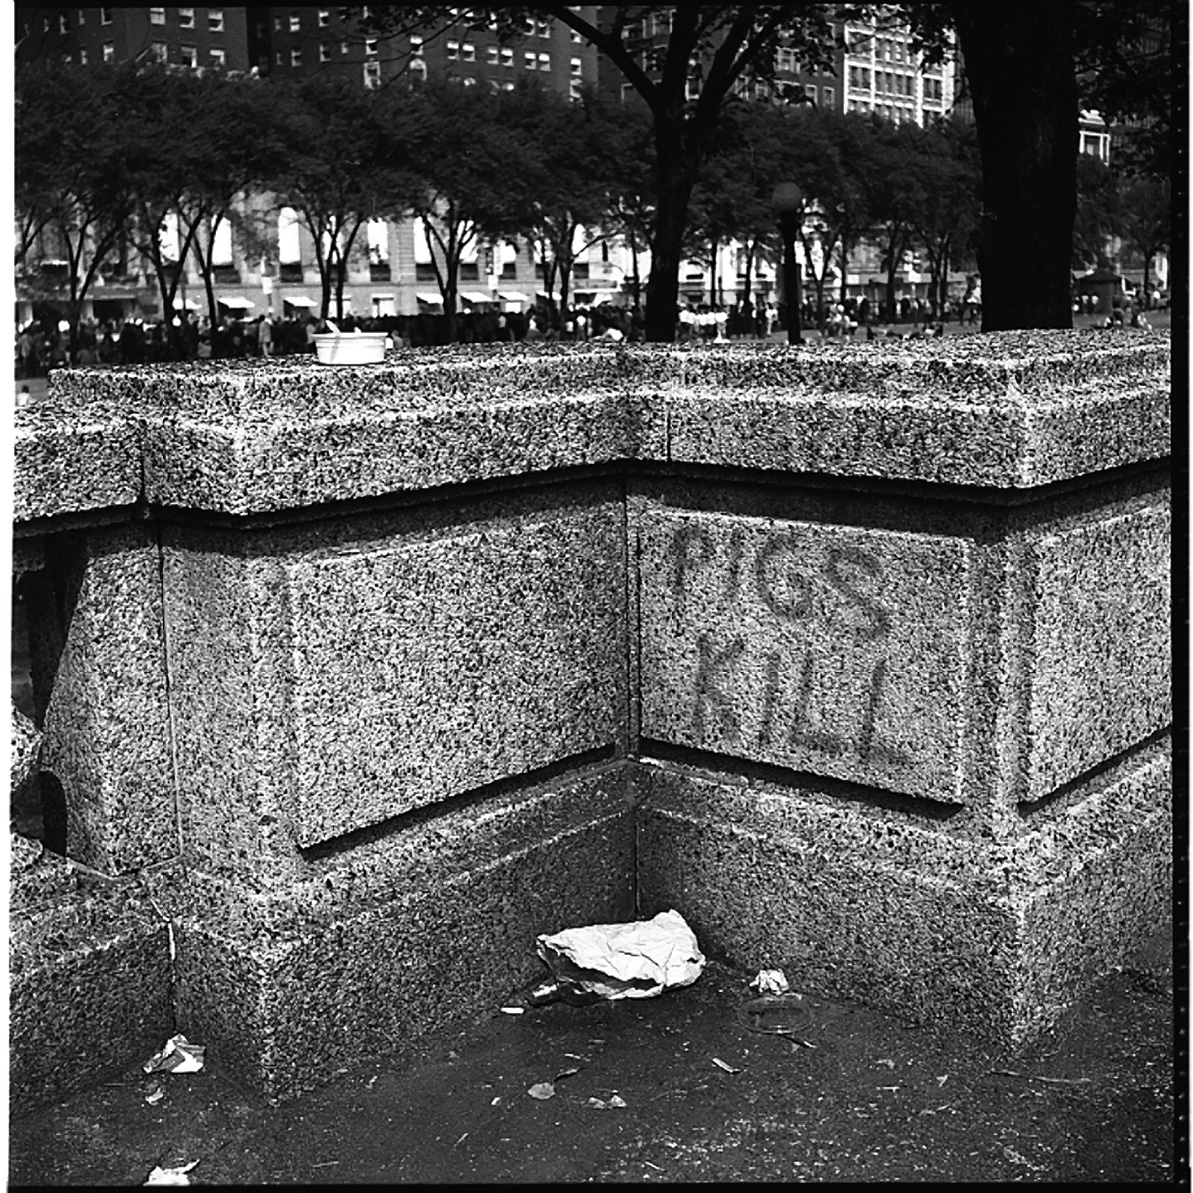 Vivian Maier, "Pigs Kill" Graffiti, Chicago, 1968